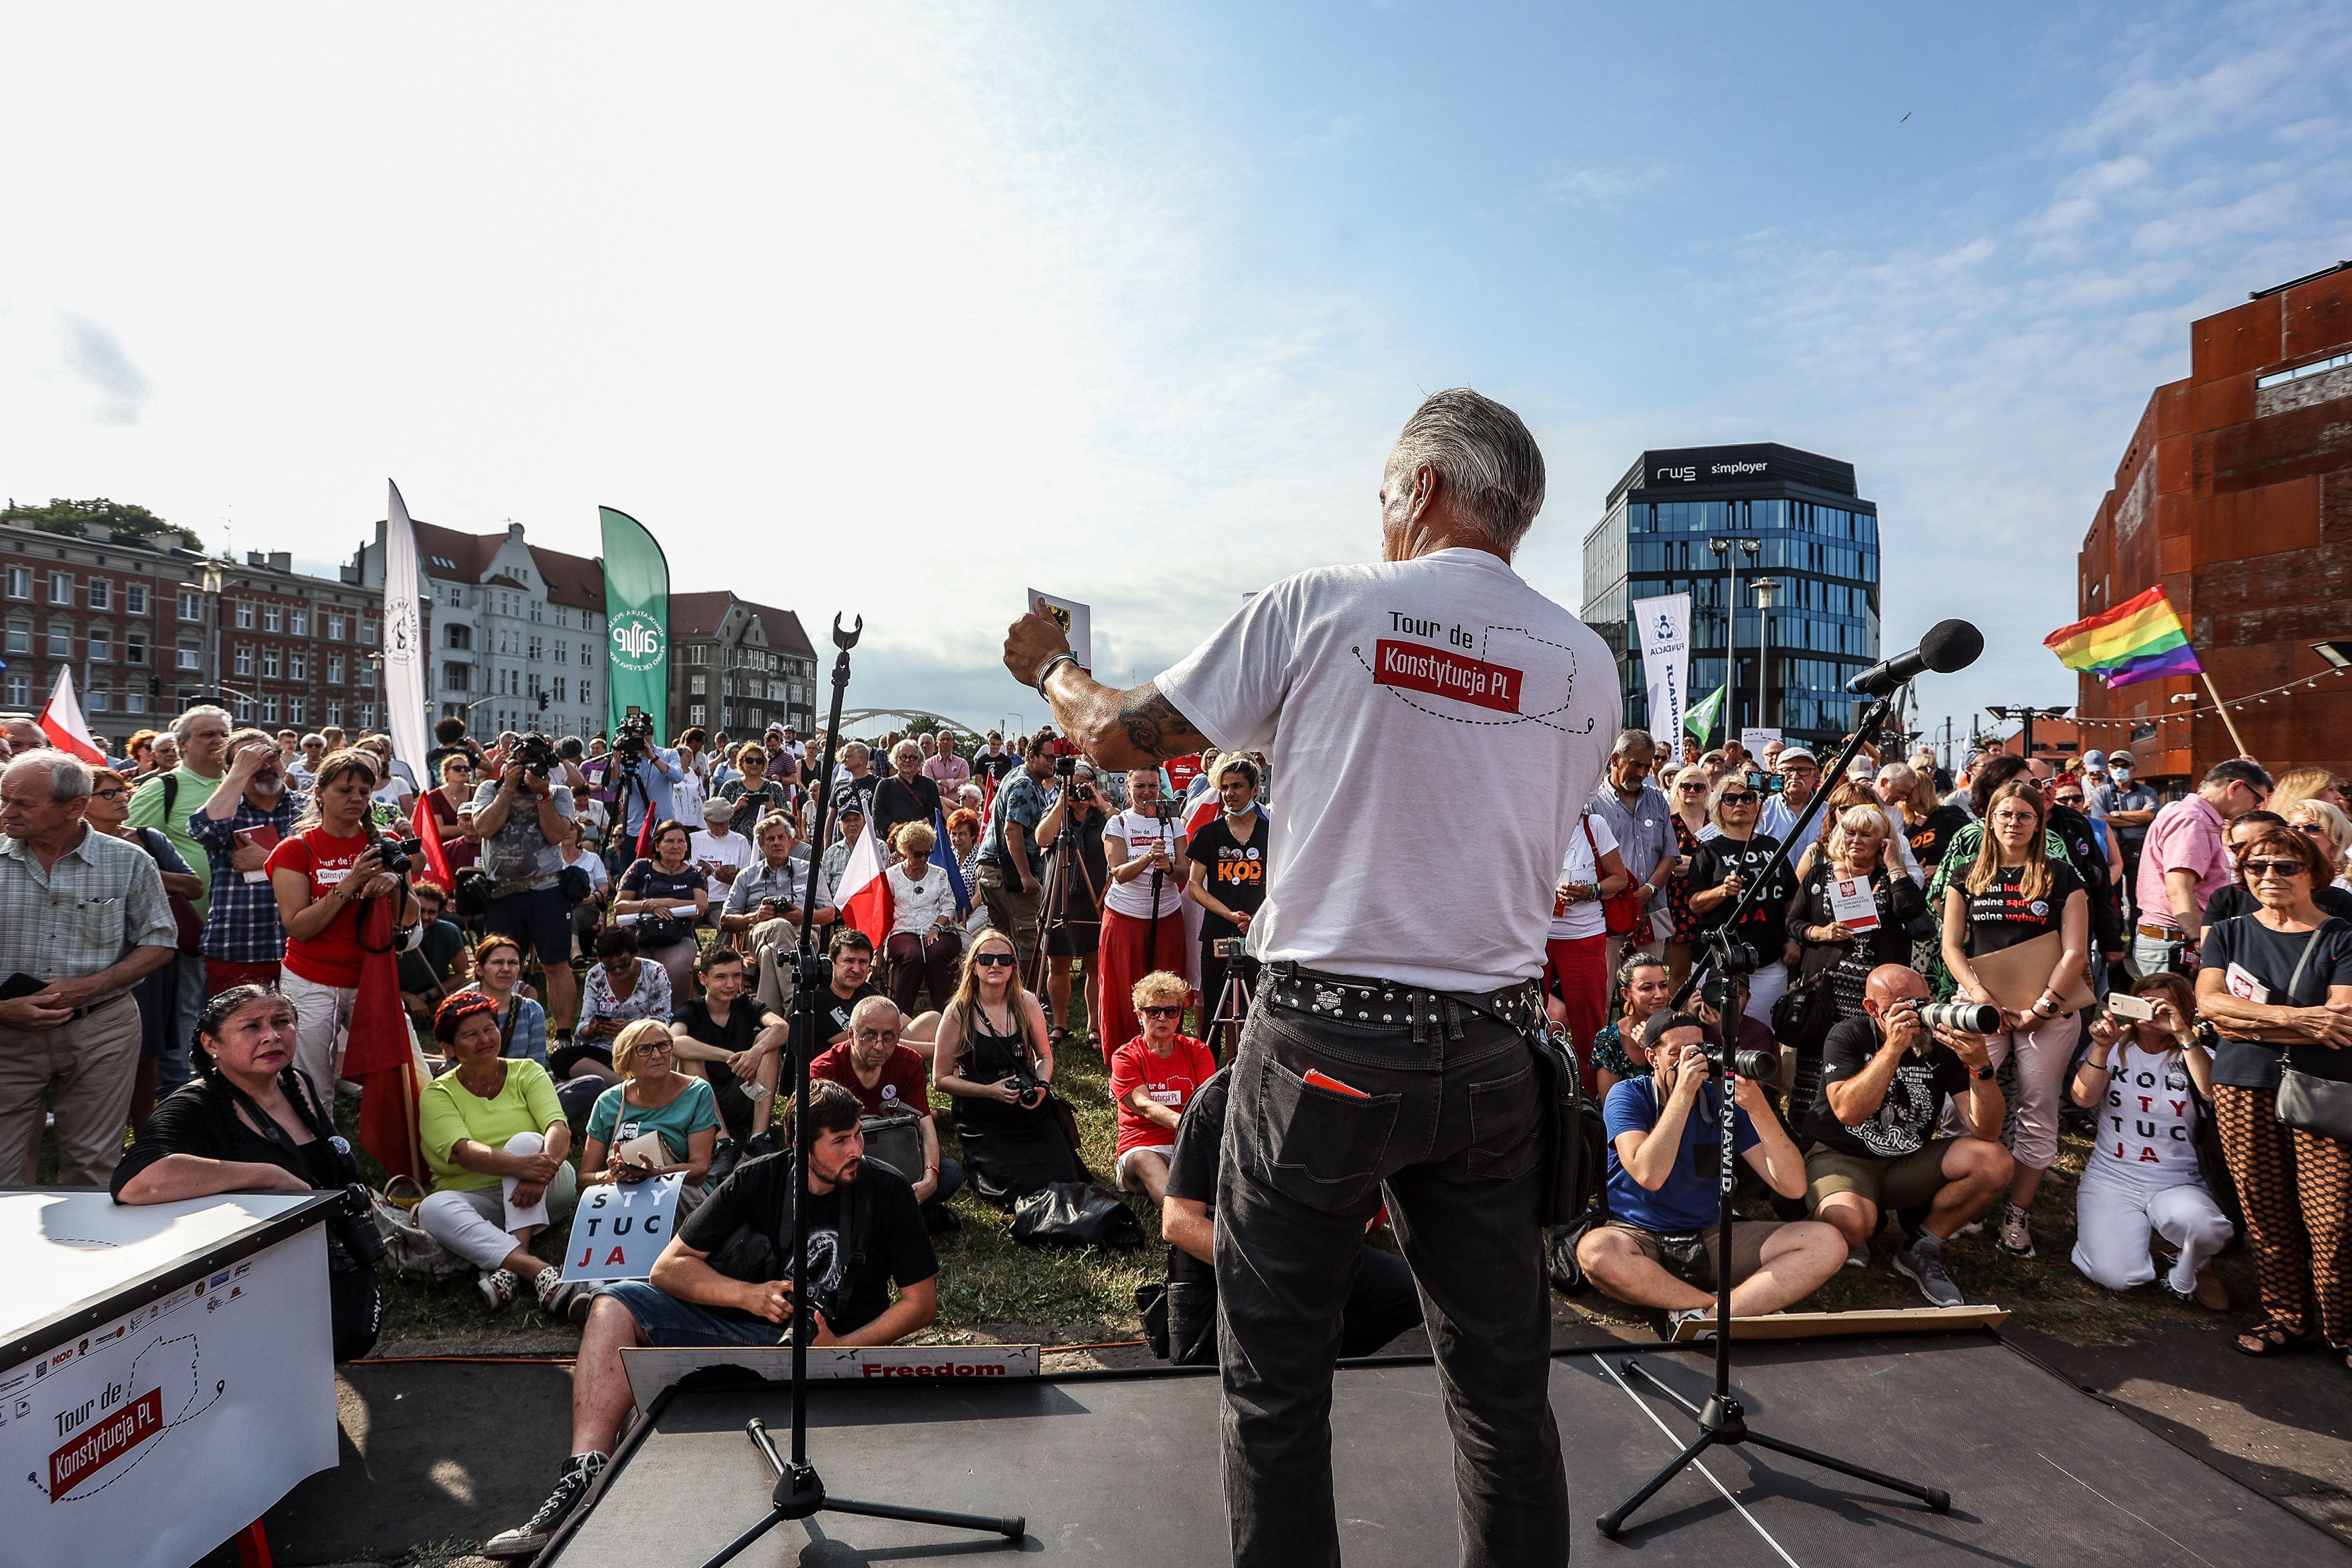 Piknik obywatelski Tour de Konstytucja, Gdańsk, plac Solidarności, lipiec 2021 r